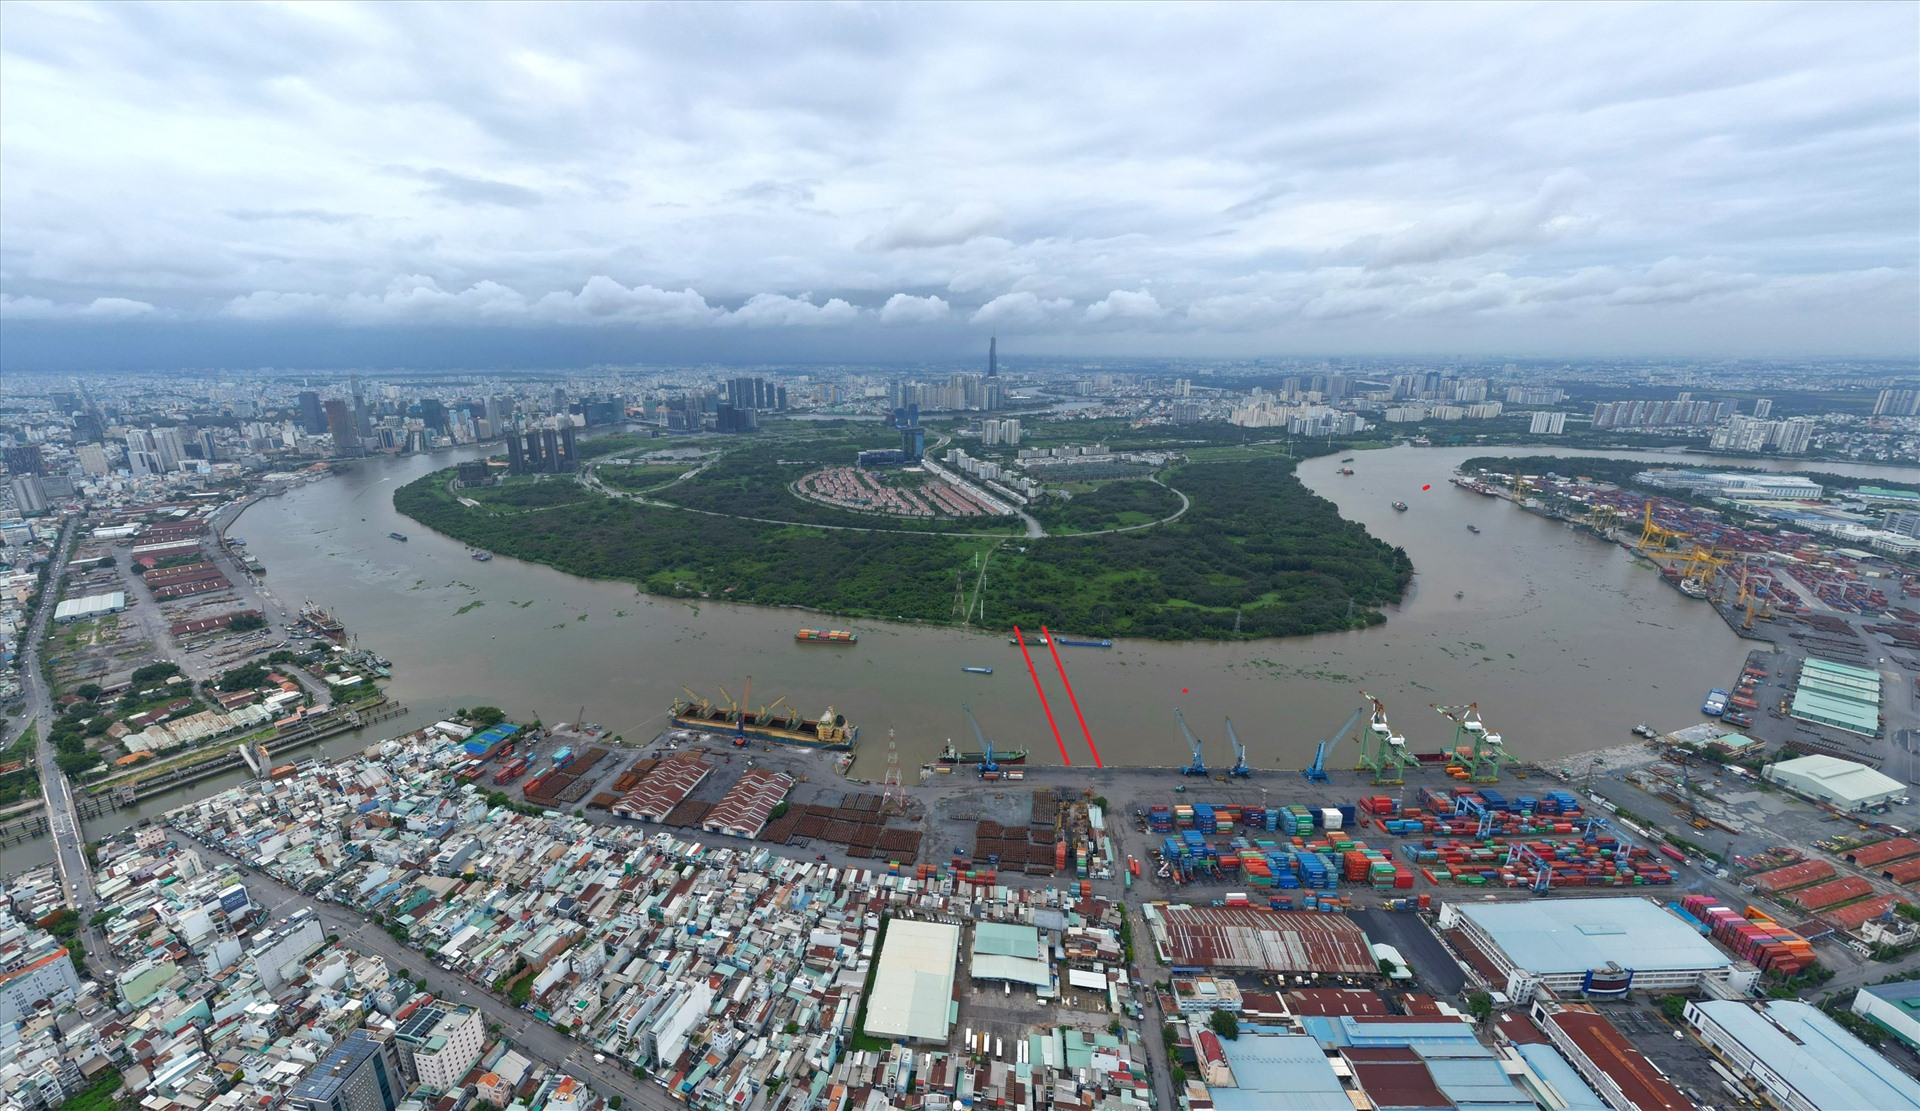 Vị trí dự kiến xây cầu Thủ Thiêm 4 nối từ cảng Tân Thuận (Quận 7) qua Khu đô thị mới Thủ Thiêm.  Ảnh: Anh Tú